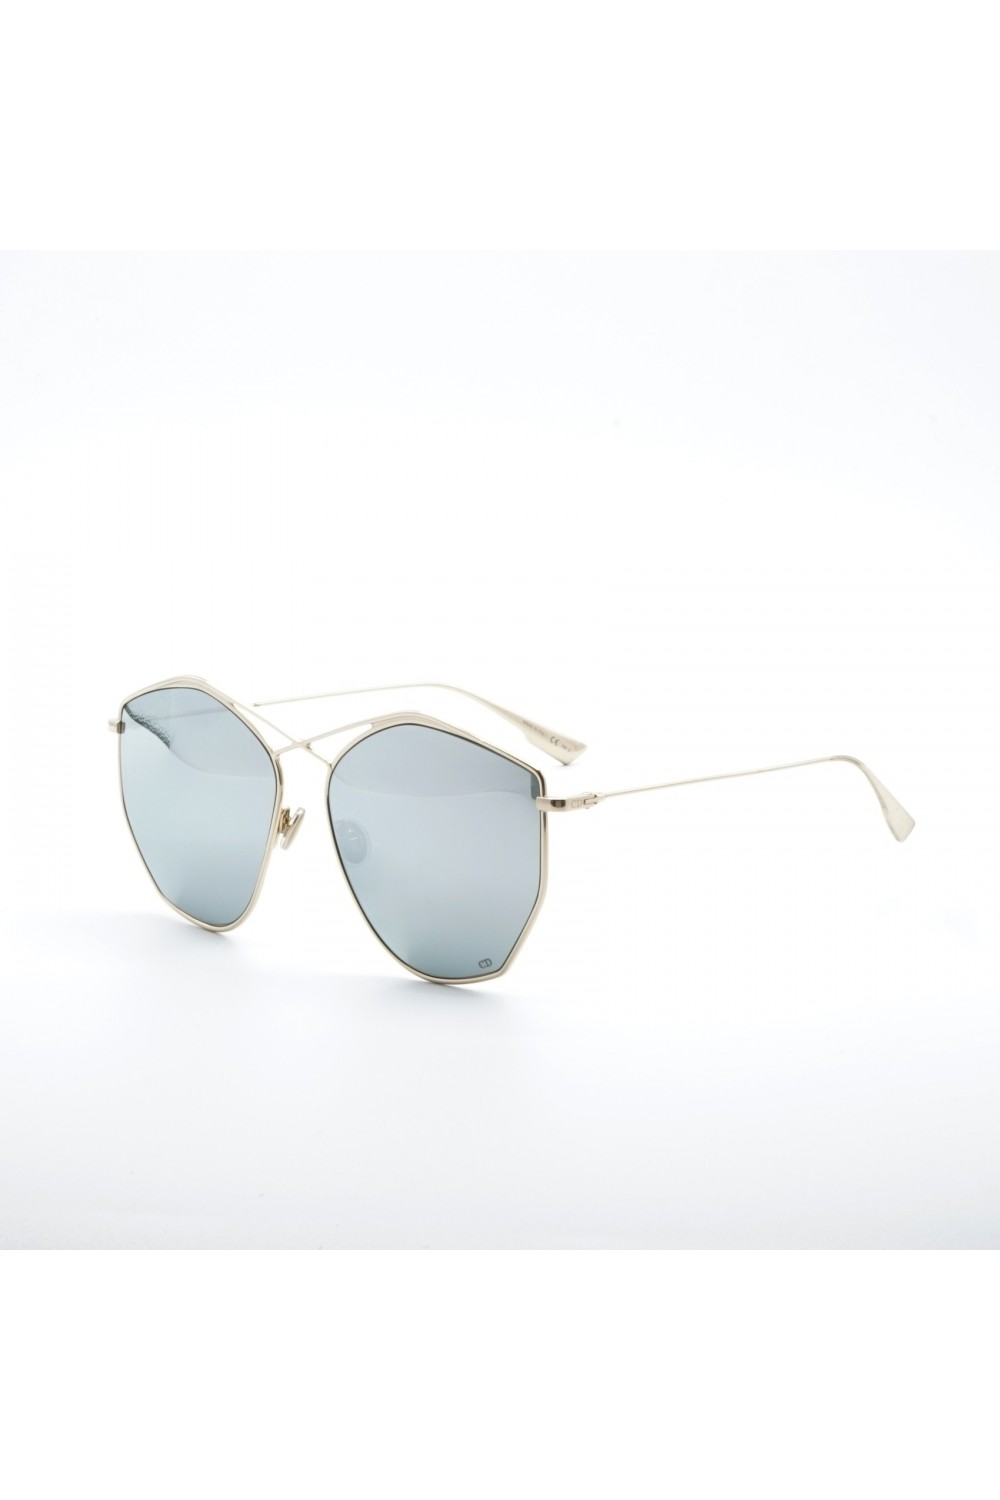 Christian Dior - Occhiali da sole in metallo esagonali per donna oro -